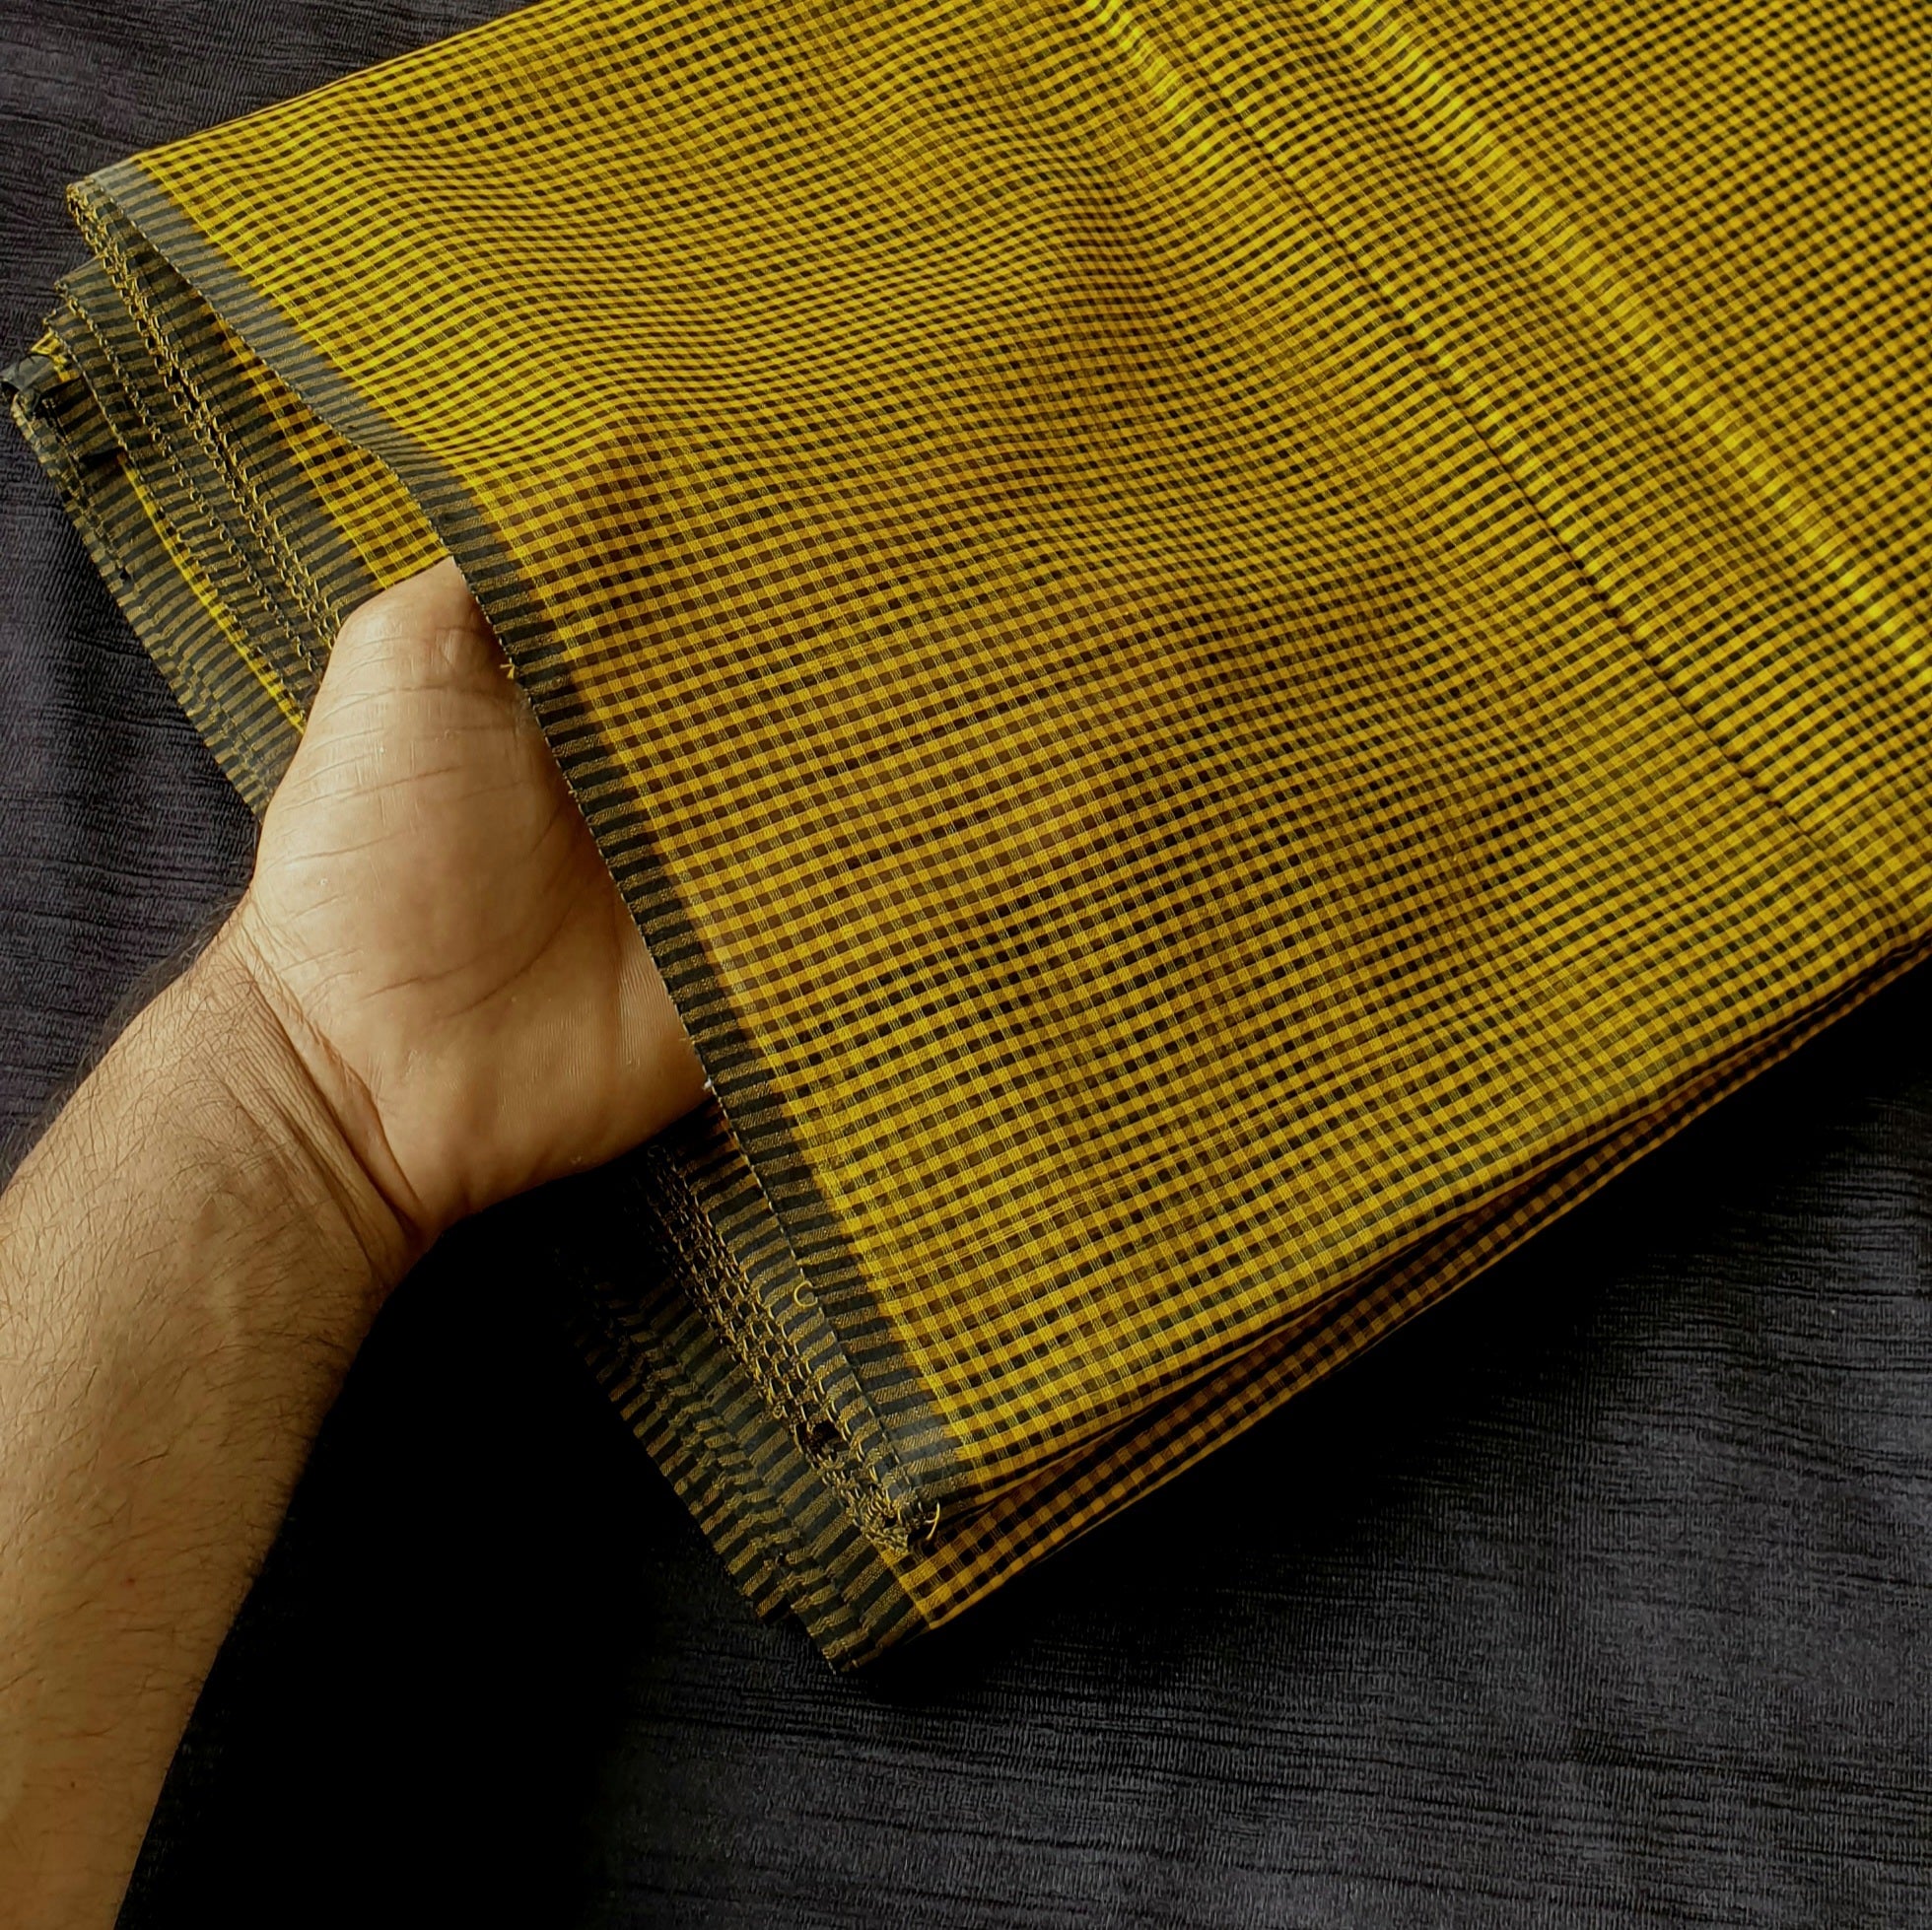 4×4 Checks running Fabrics in Yellow and Black.